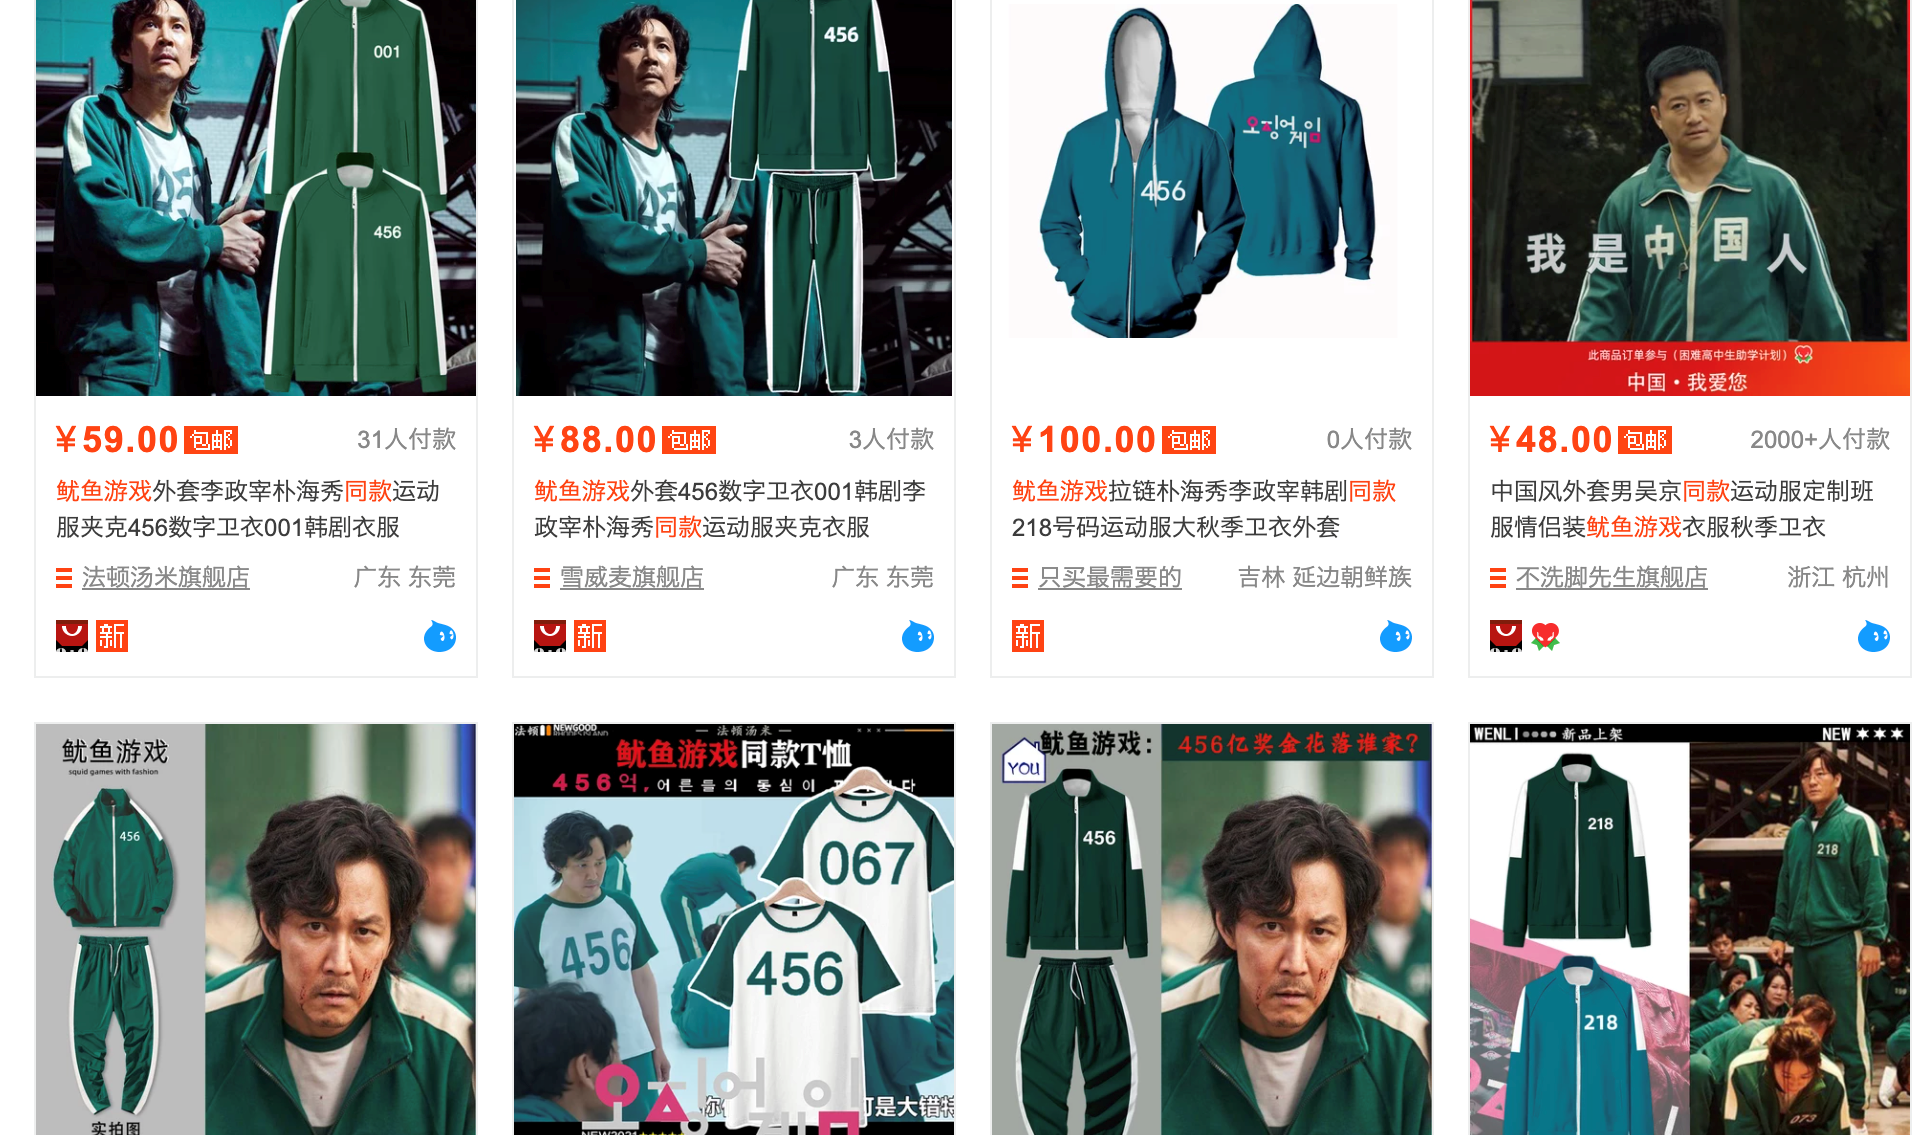 중국 인터넷 쇼핑몰 타오바오에서 팔고 있는 ‘오징어 게임’ 상품들 (출처: 타오바오 갈무리)